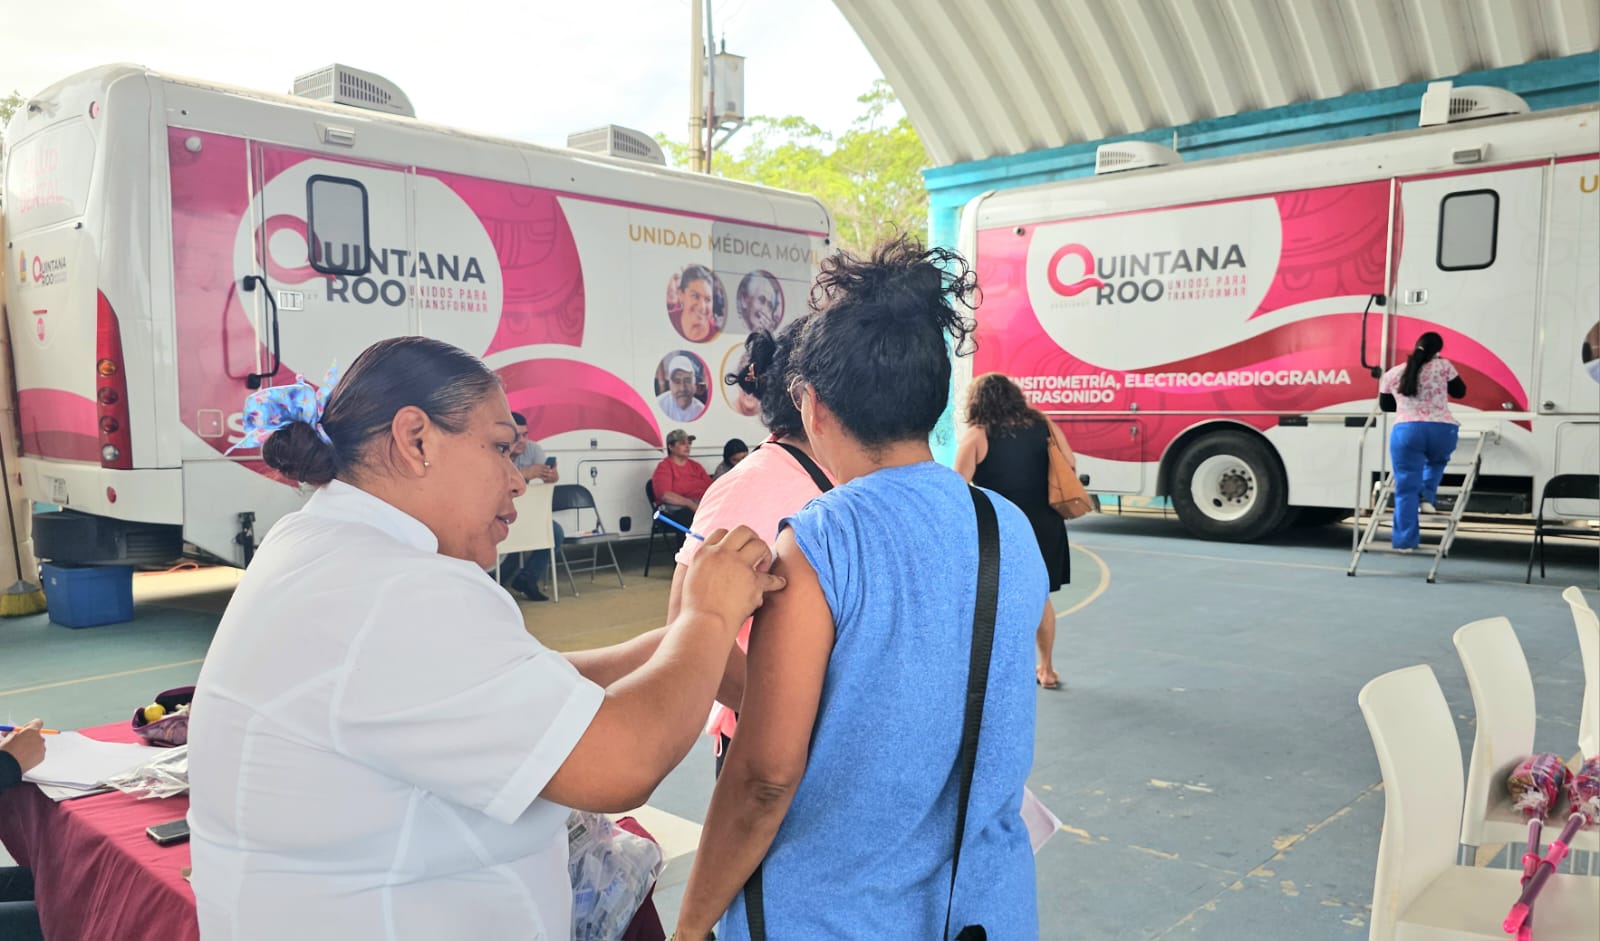 Caravanas móviles ofrecen 15 servicios médicos gratuitos en Quintana Roo